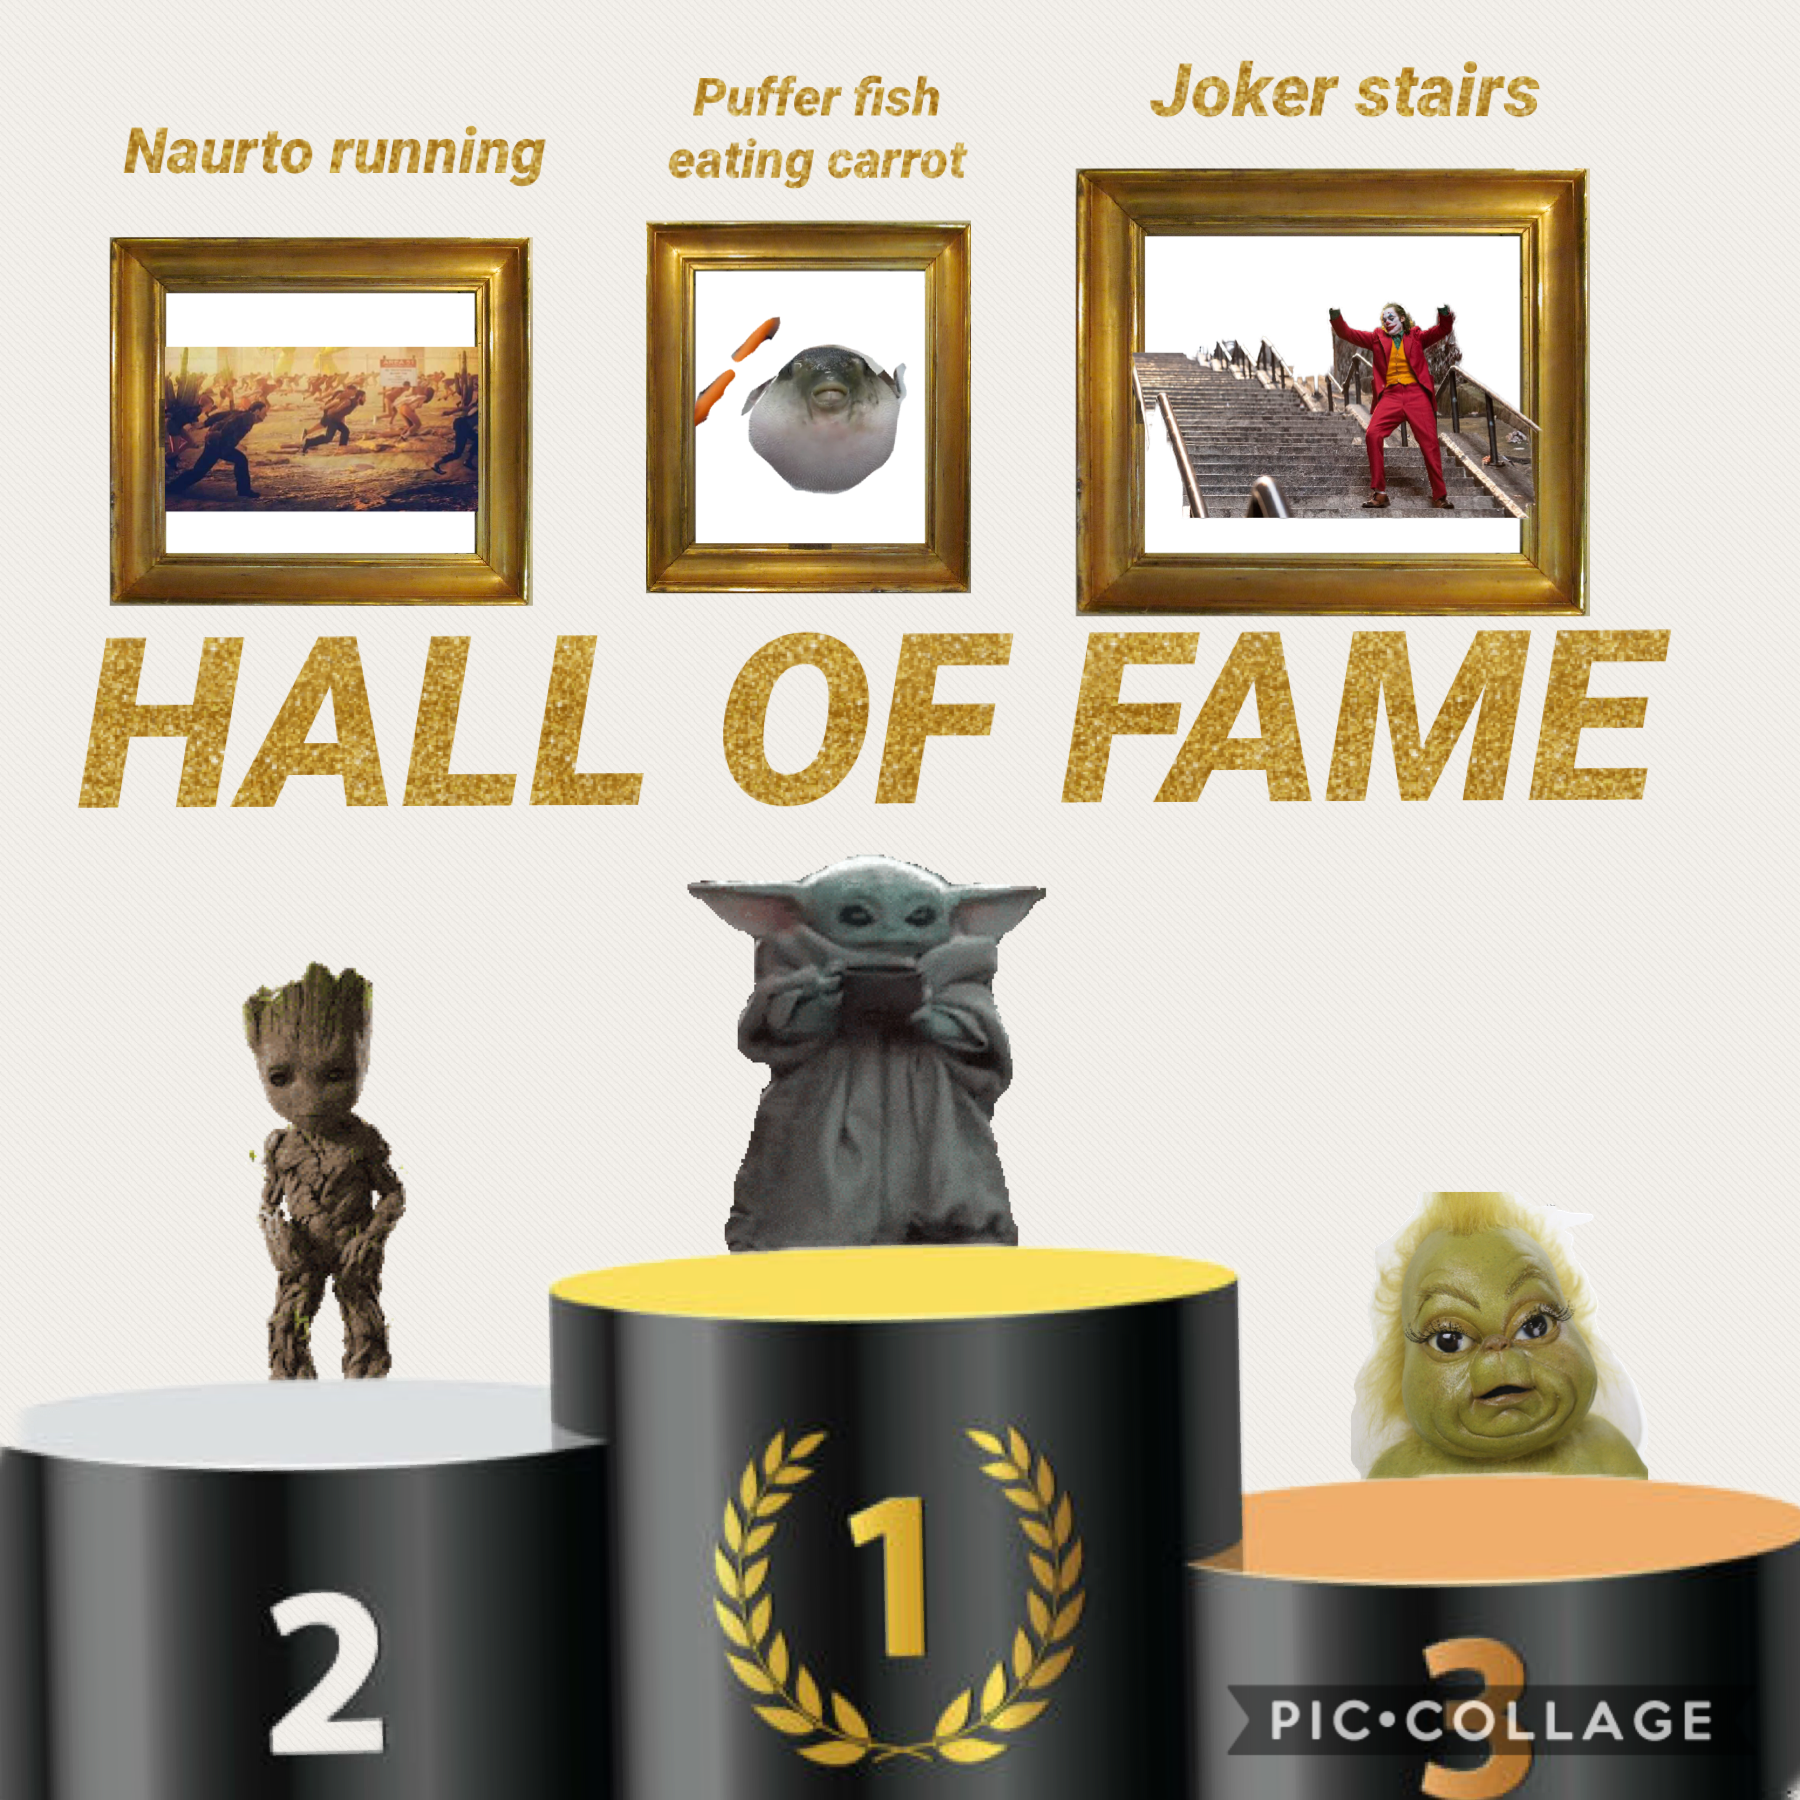 Hall of fame